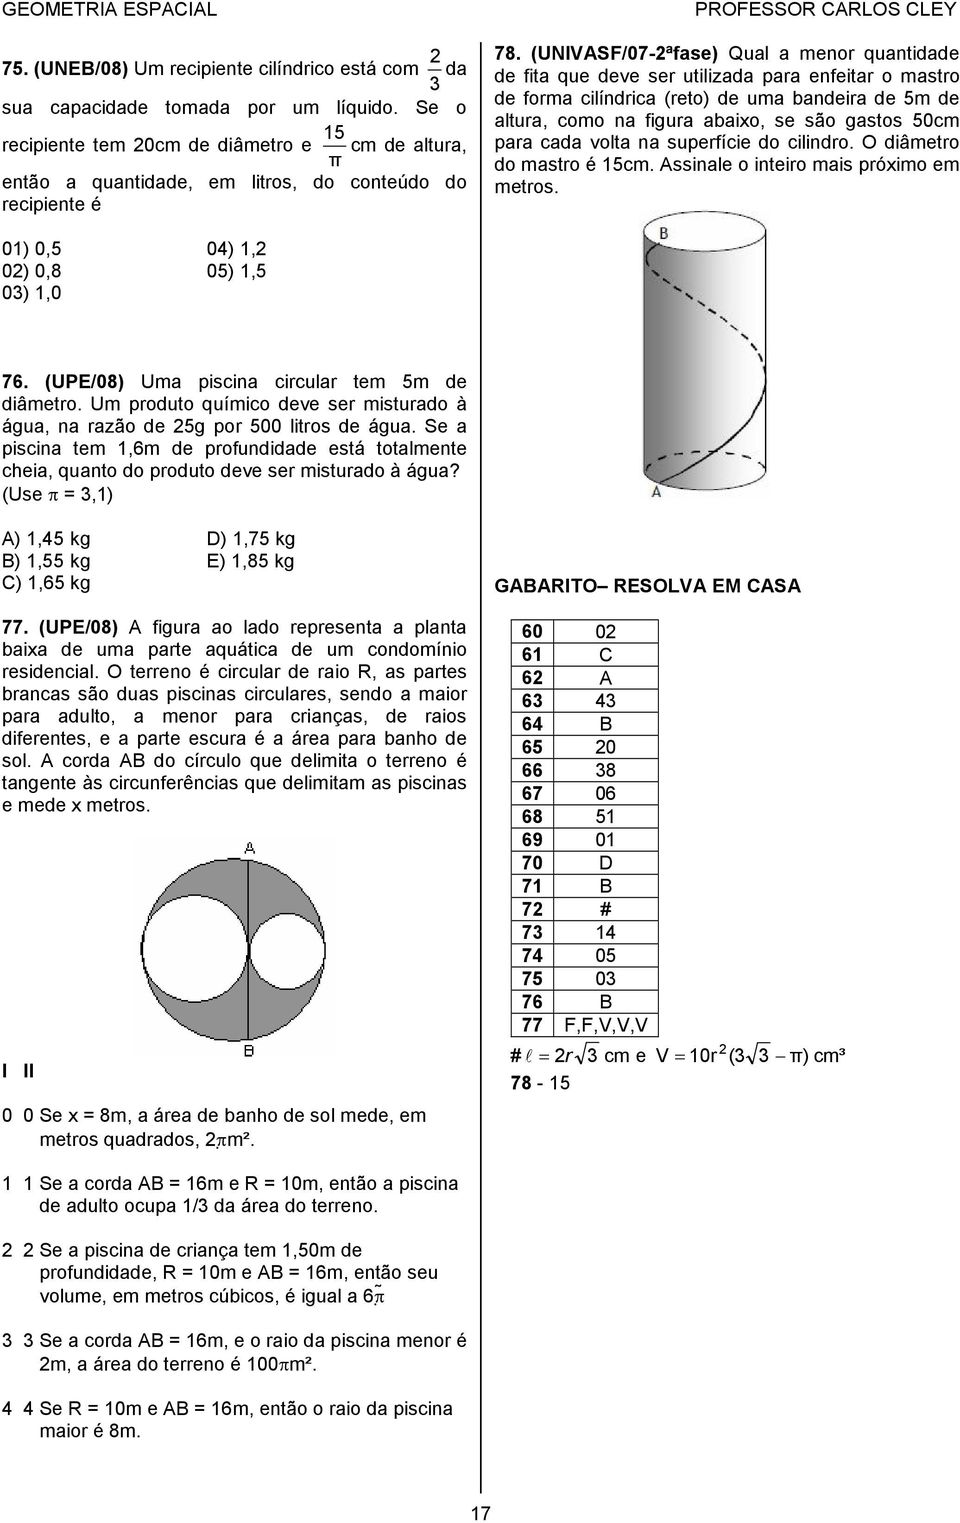 (UNIVASF/07-ªfase) Qual a menor quantidade de fita que deve ser utilizada para enfeitar o mastro de forma cilíndrica (reto) de uma bandeira de 5m de altura, como na figura abaixo, se são gastos 50cm